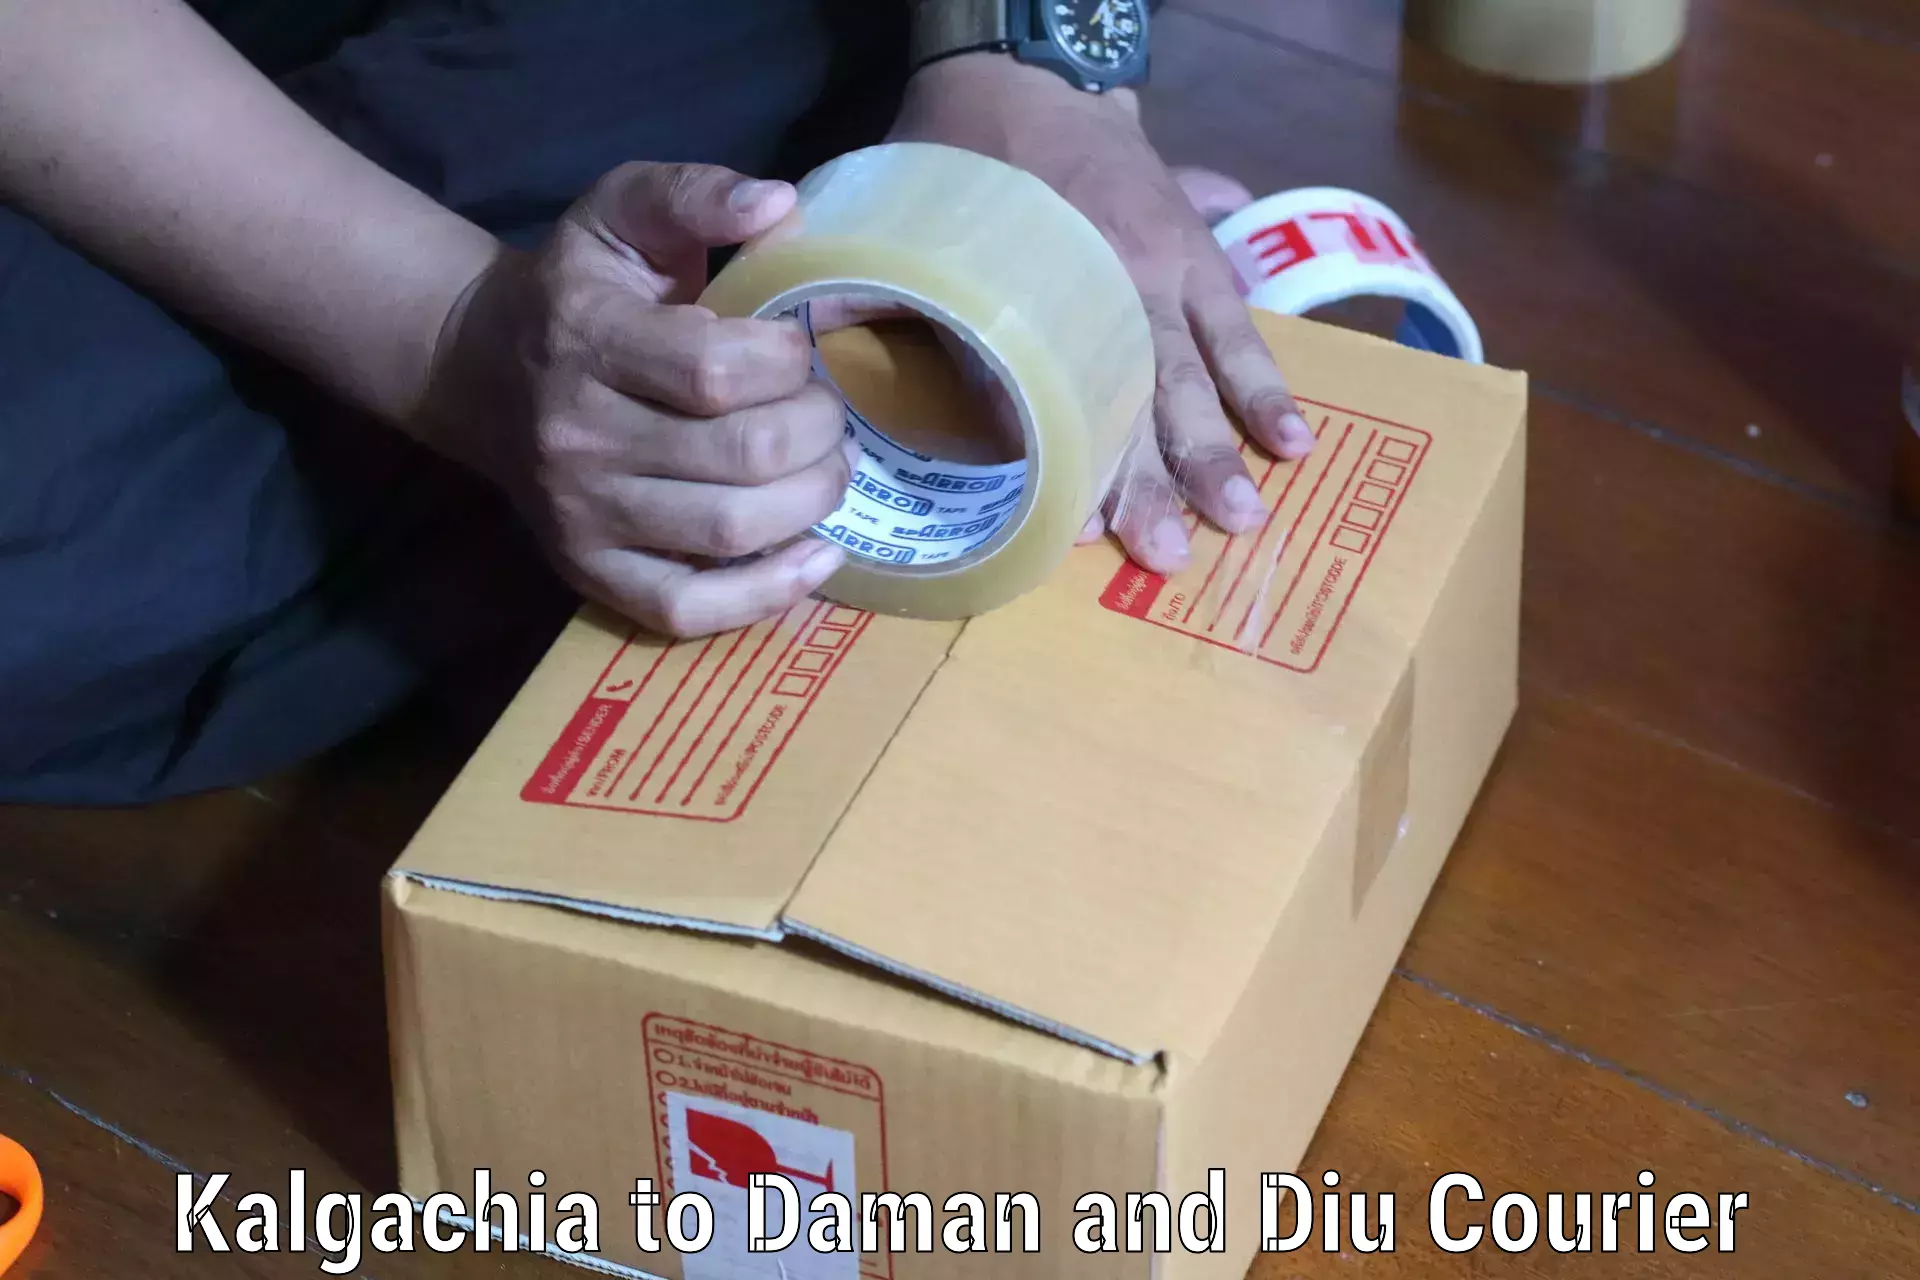 Personal courier services Kalgachia to Daman and Diu